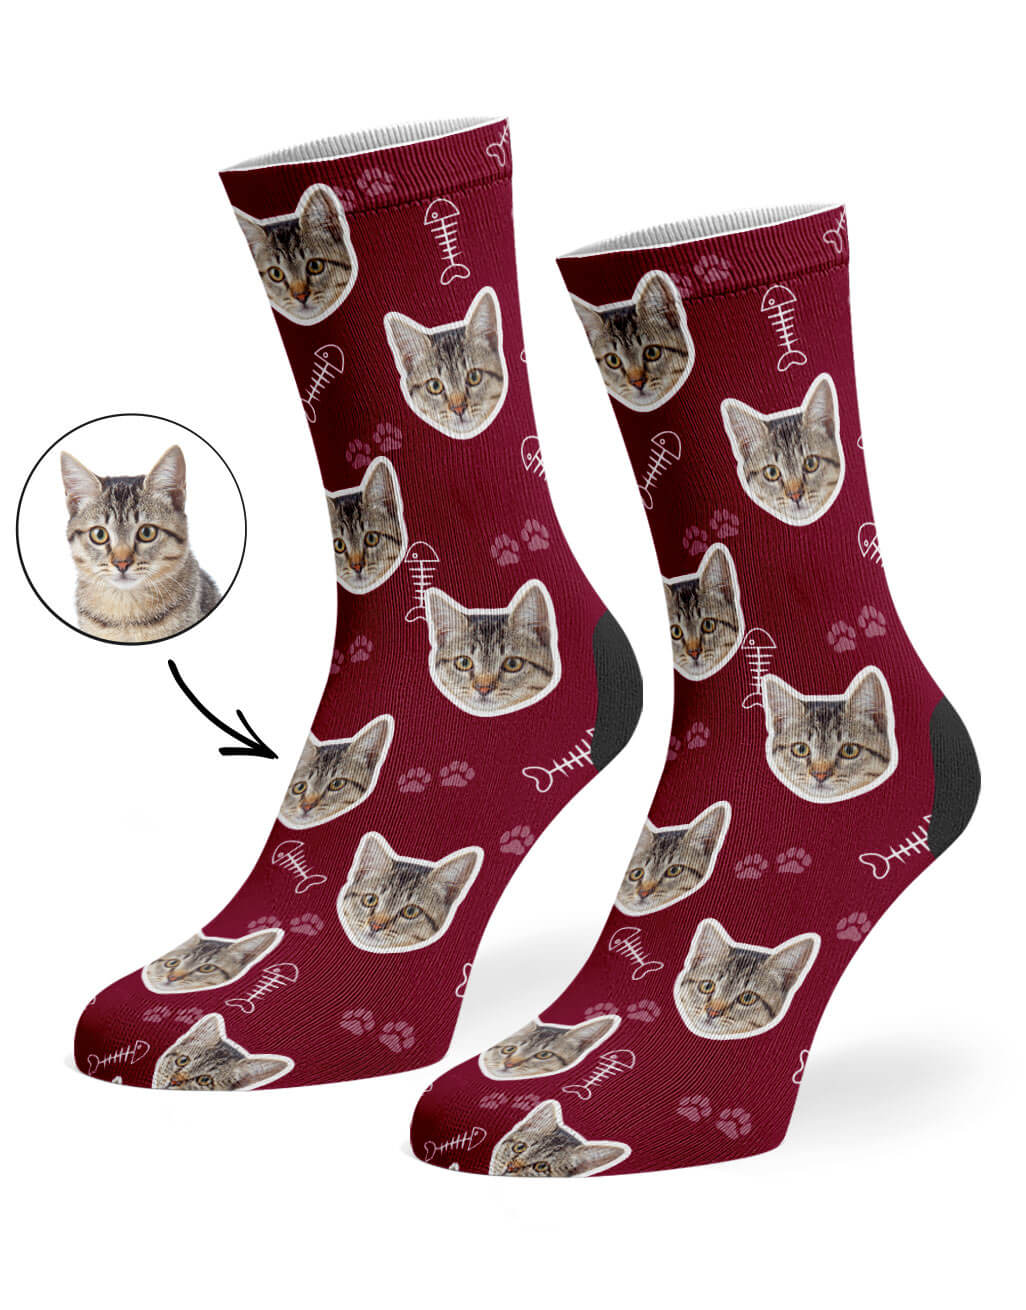 Burgundy Your Cat On Socks